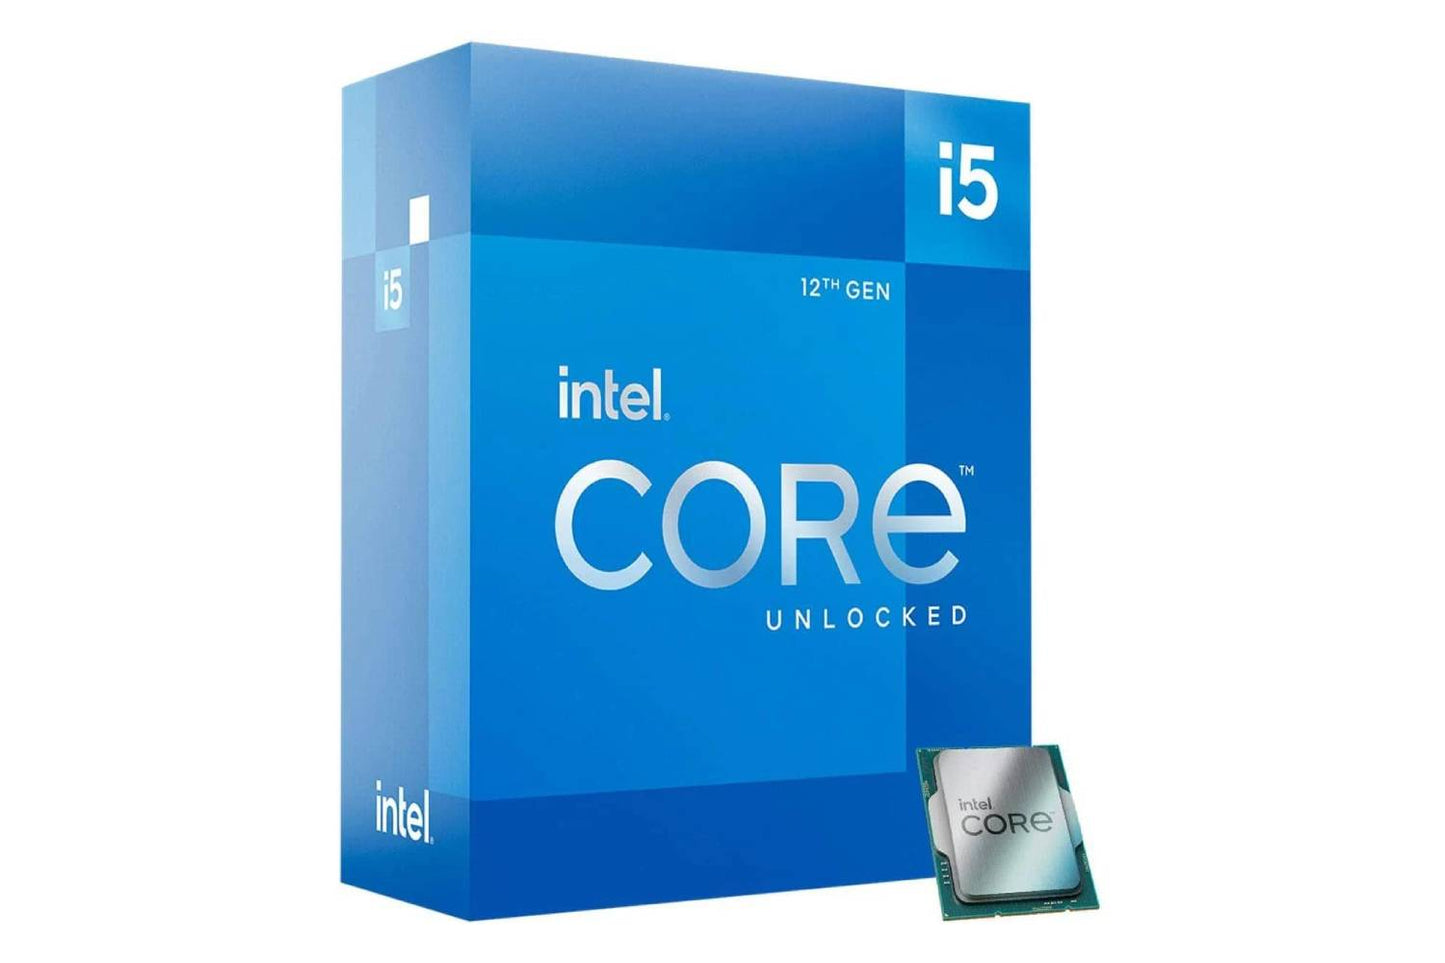 Intel Core i5 12600Kf 12 Gen Processor